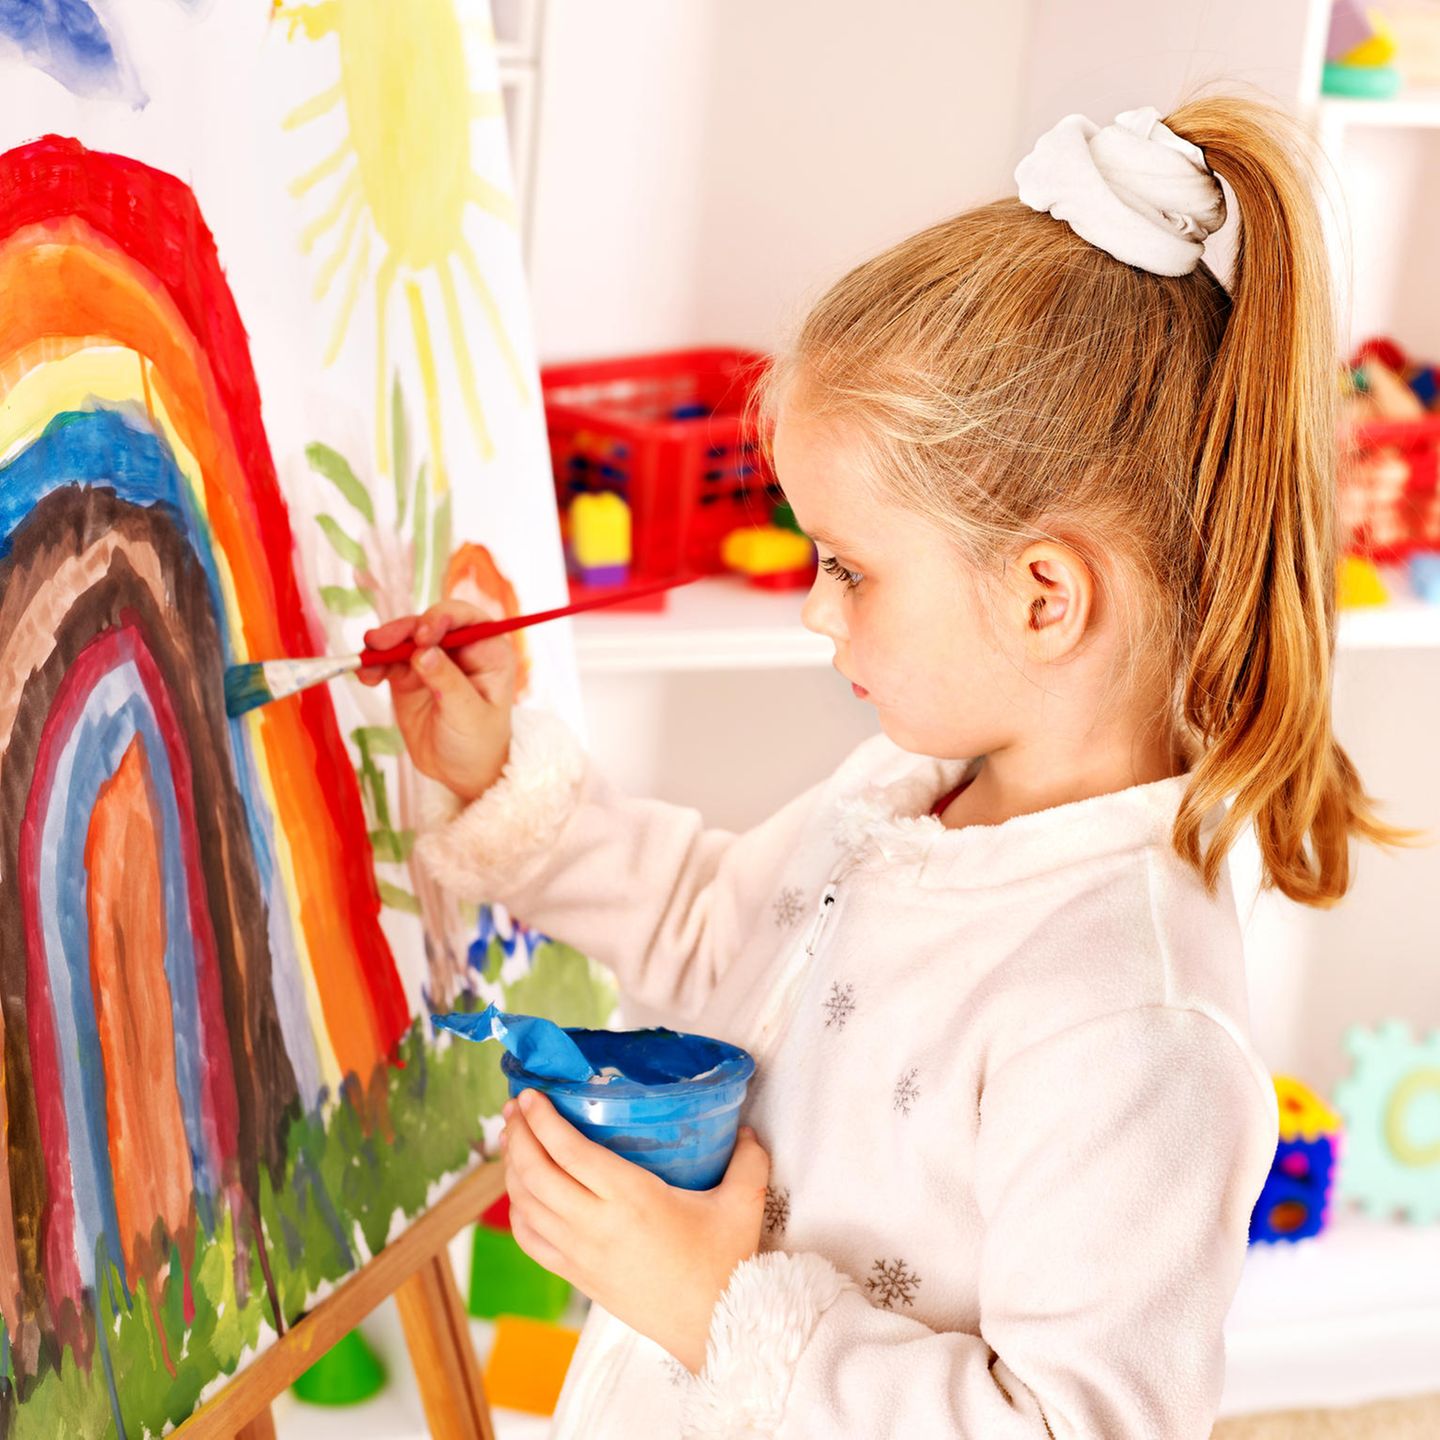 Malen mit Kindern: bemalte Leinwand